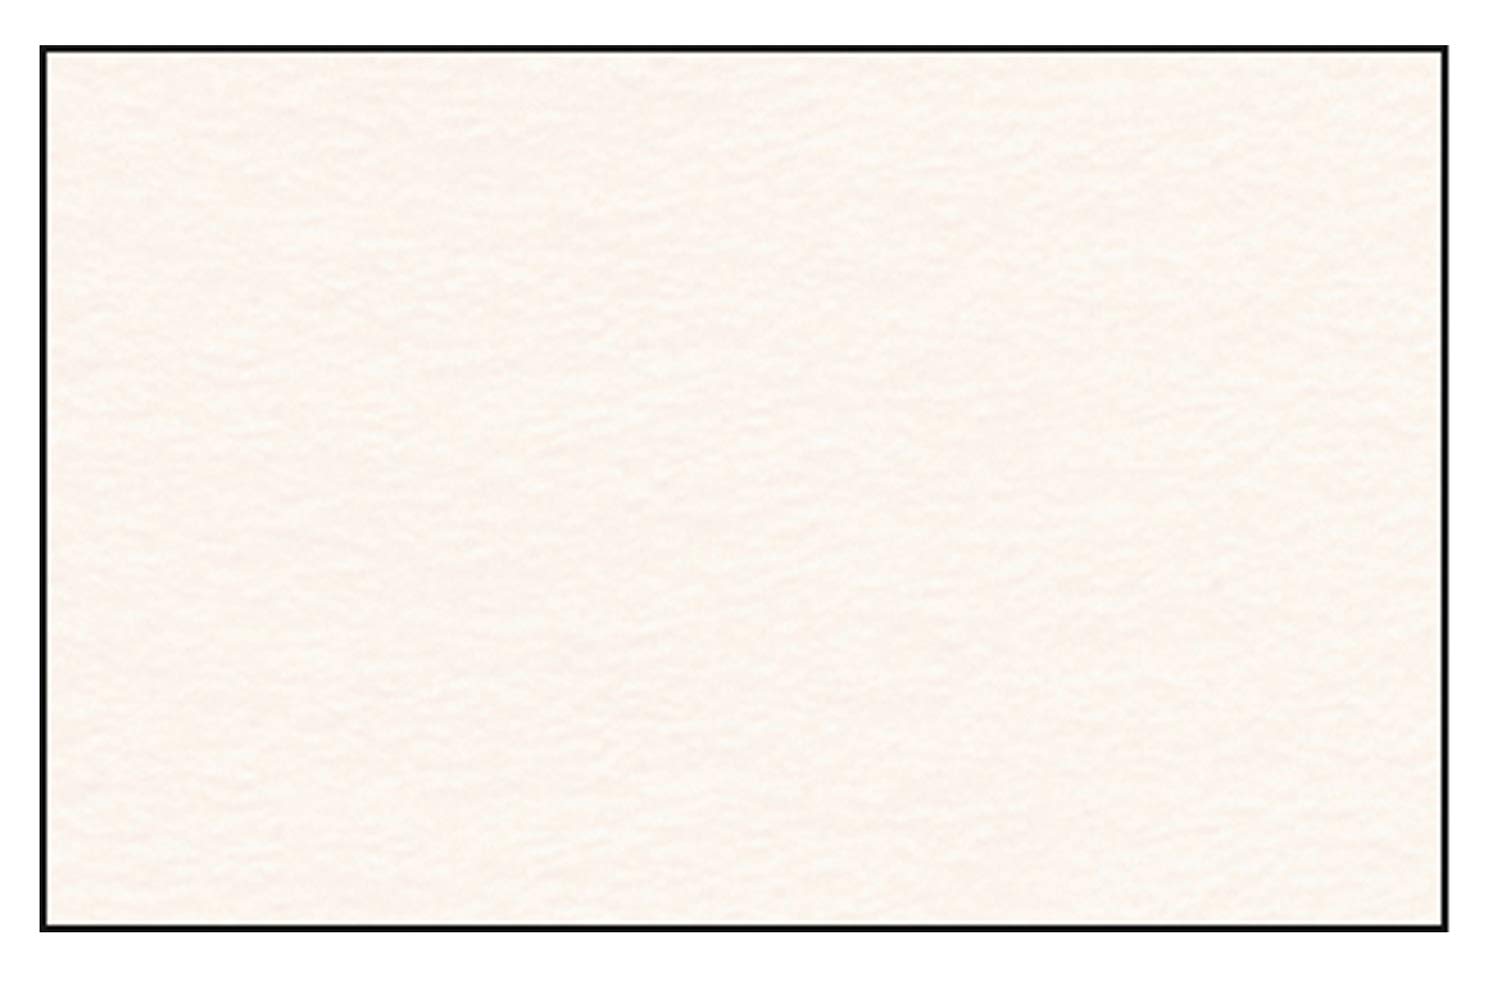 Ursus 3774620 - Fotokarton rosé, DIN A4, 300 g/qm, 50 Blatt, durchgefärbt, hohe Farbbrillanz und Lichtbeständigkeit, aus frischzellulose, ideale Grundlage für kreative Bastelarbeiten